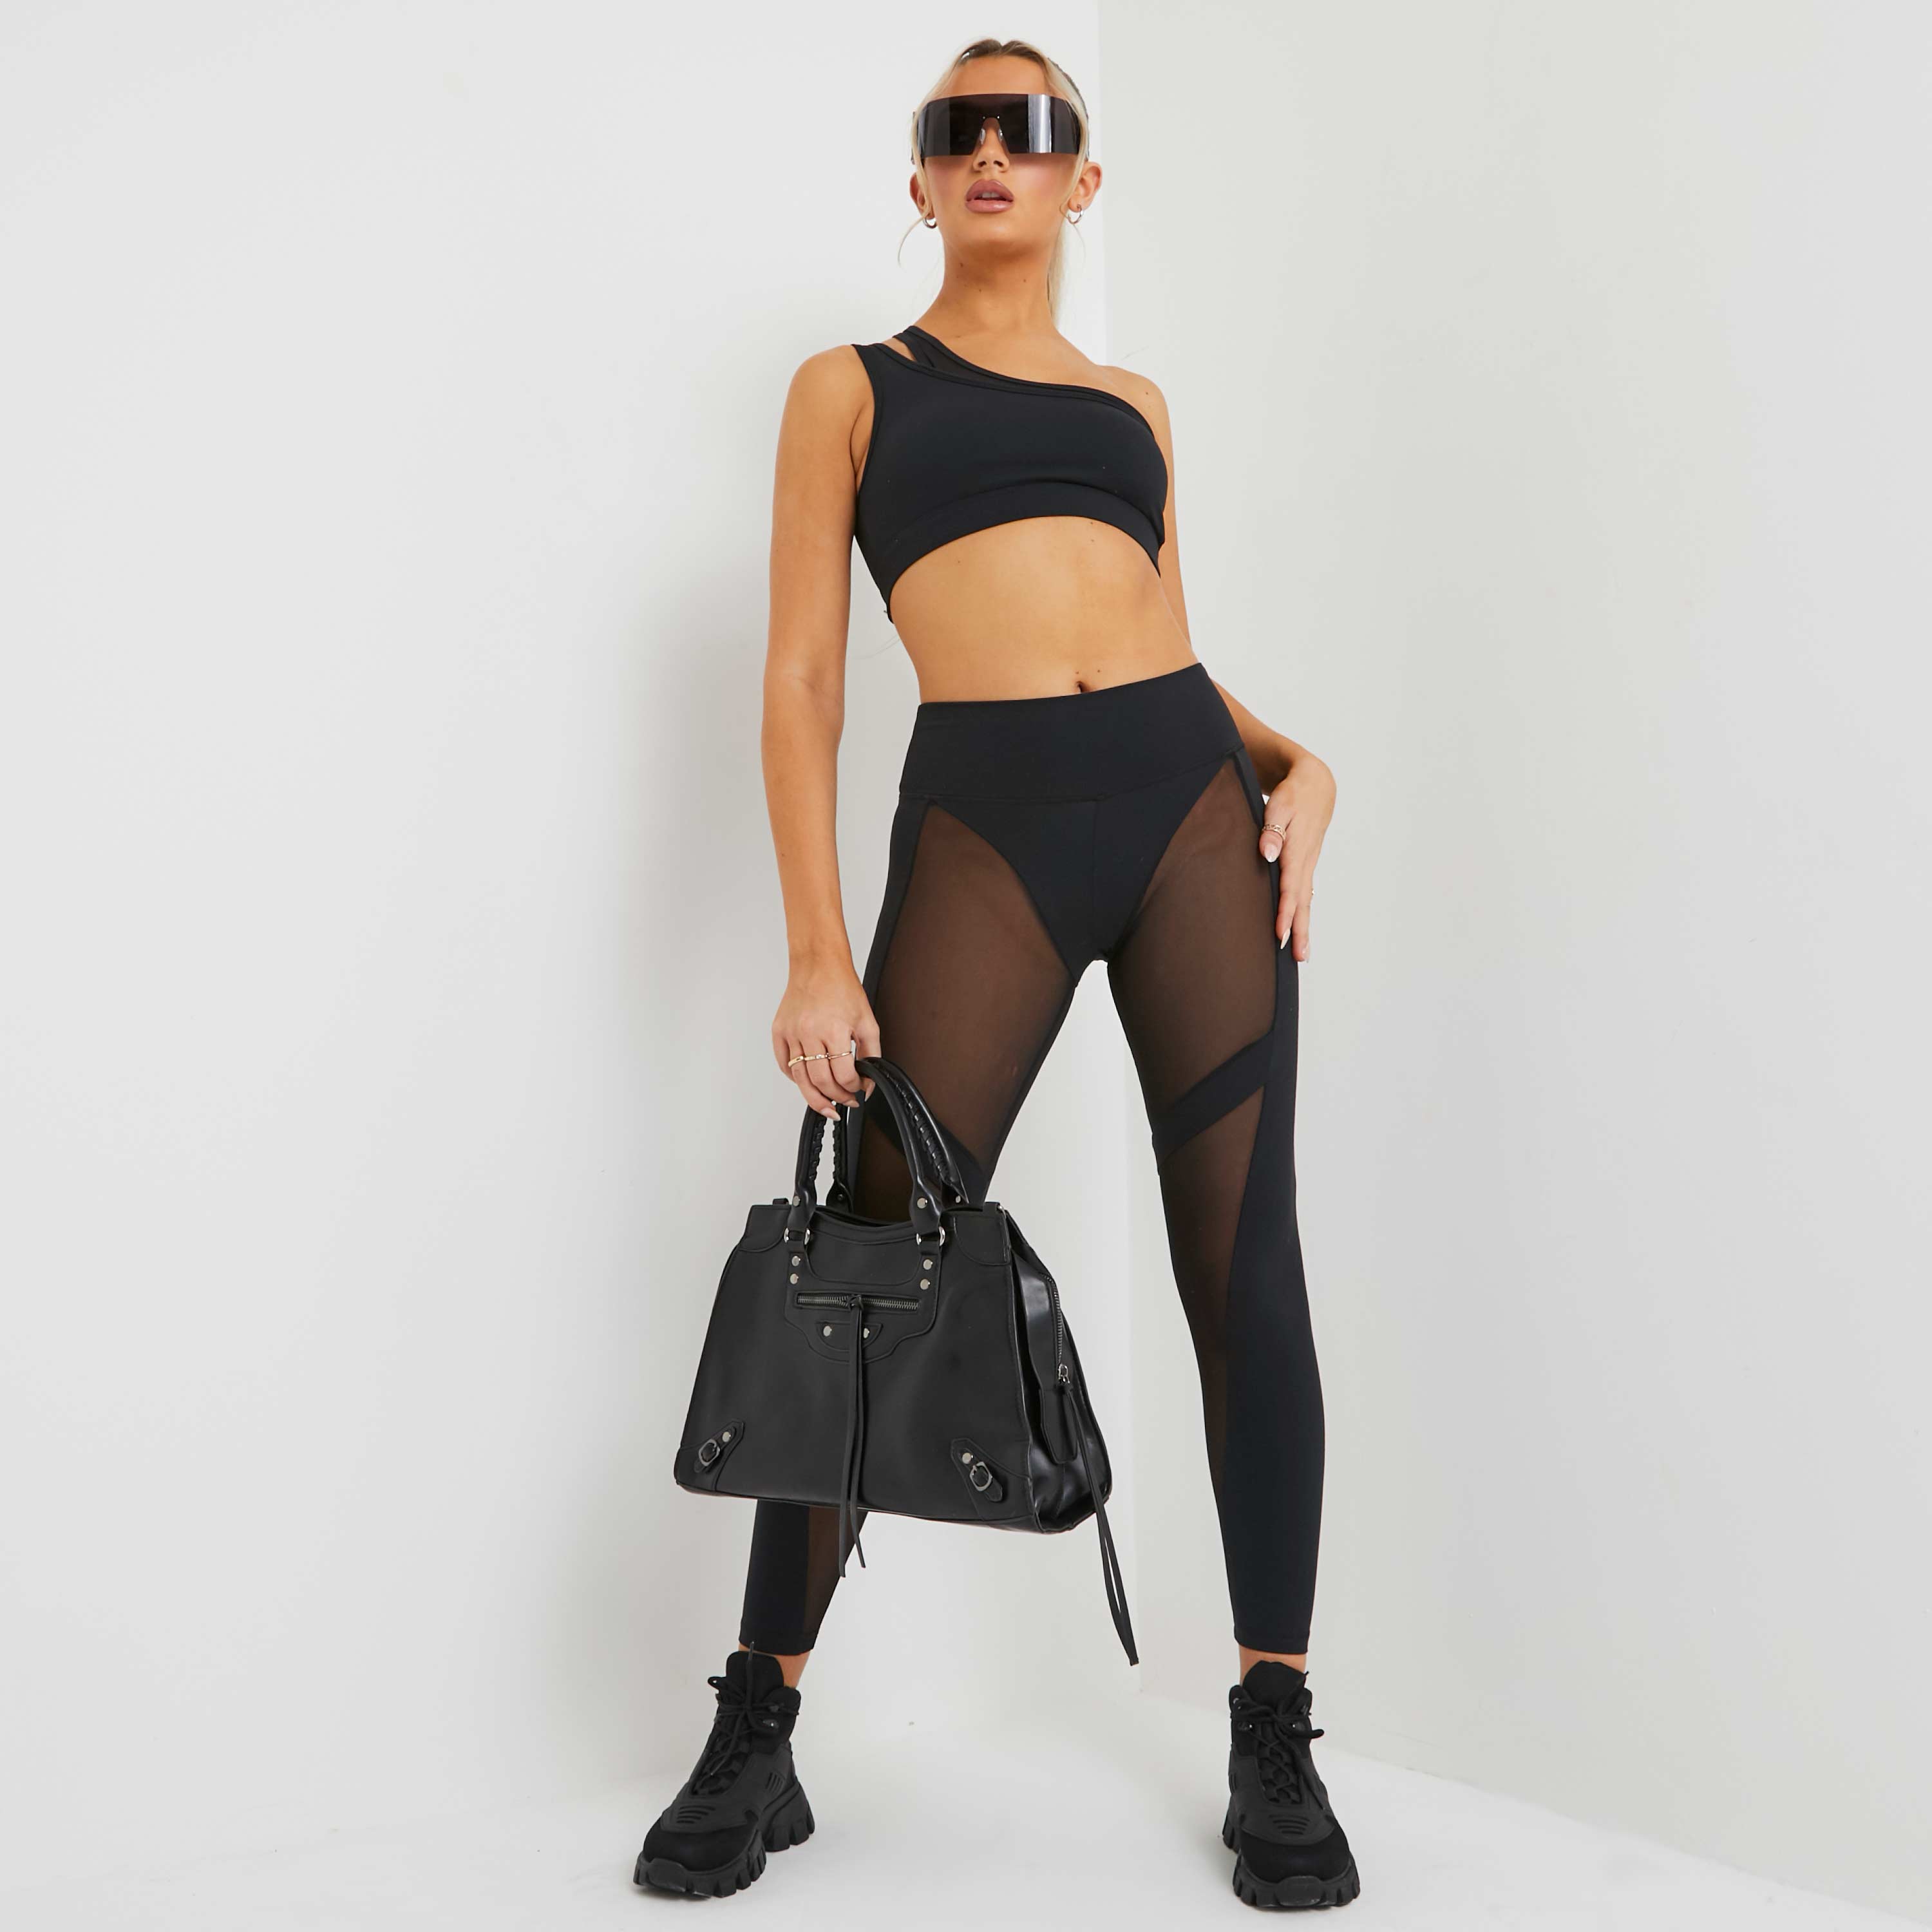 Ego High waist mesh panel gym leggings in black uk small s, black